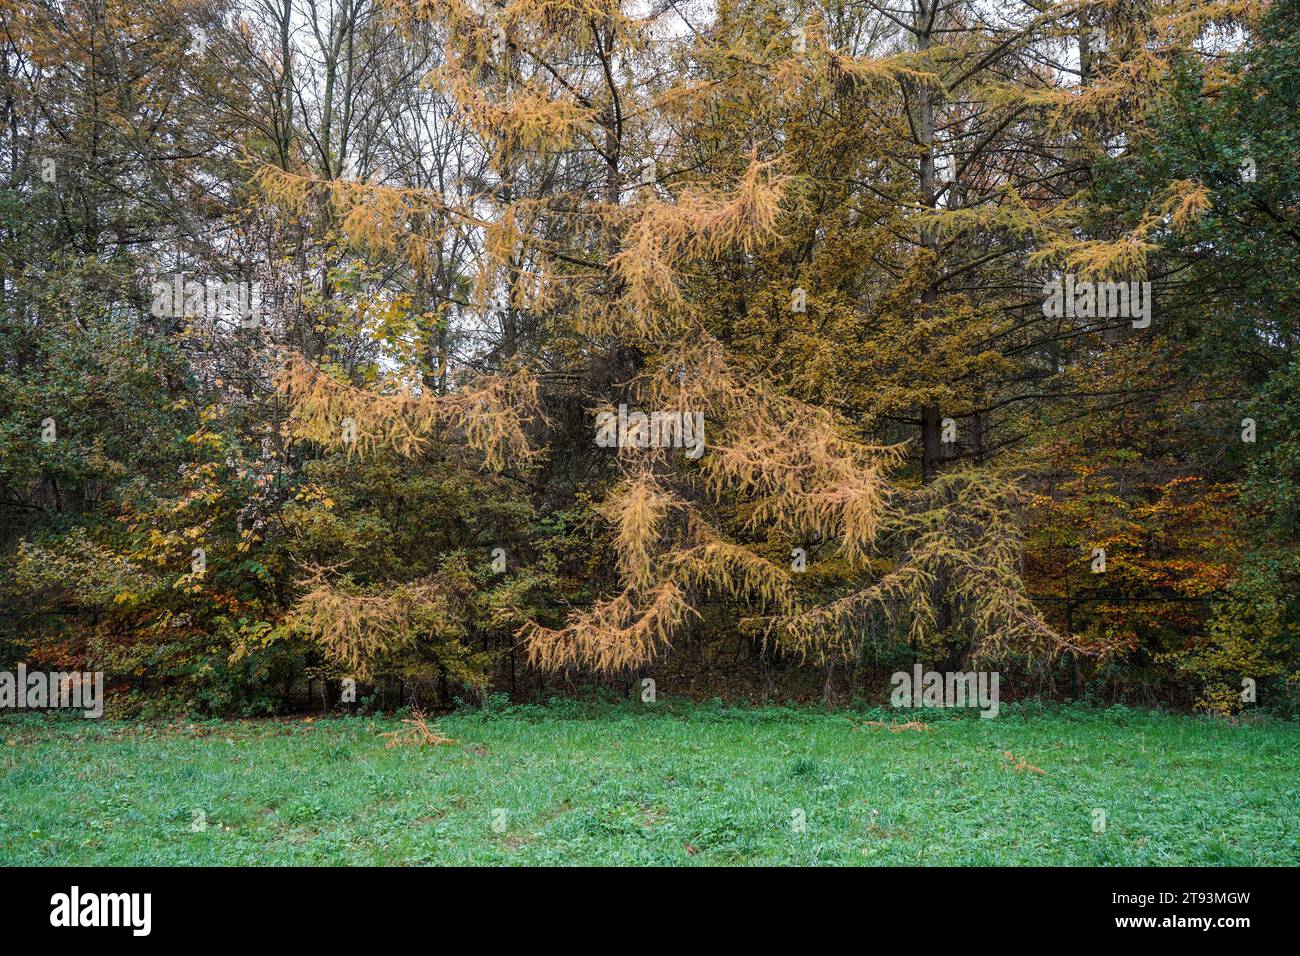 Mélèze commun, larix decidua, conifère caduque, de couleur automnale. Pays-Bas. Banque D'Images